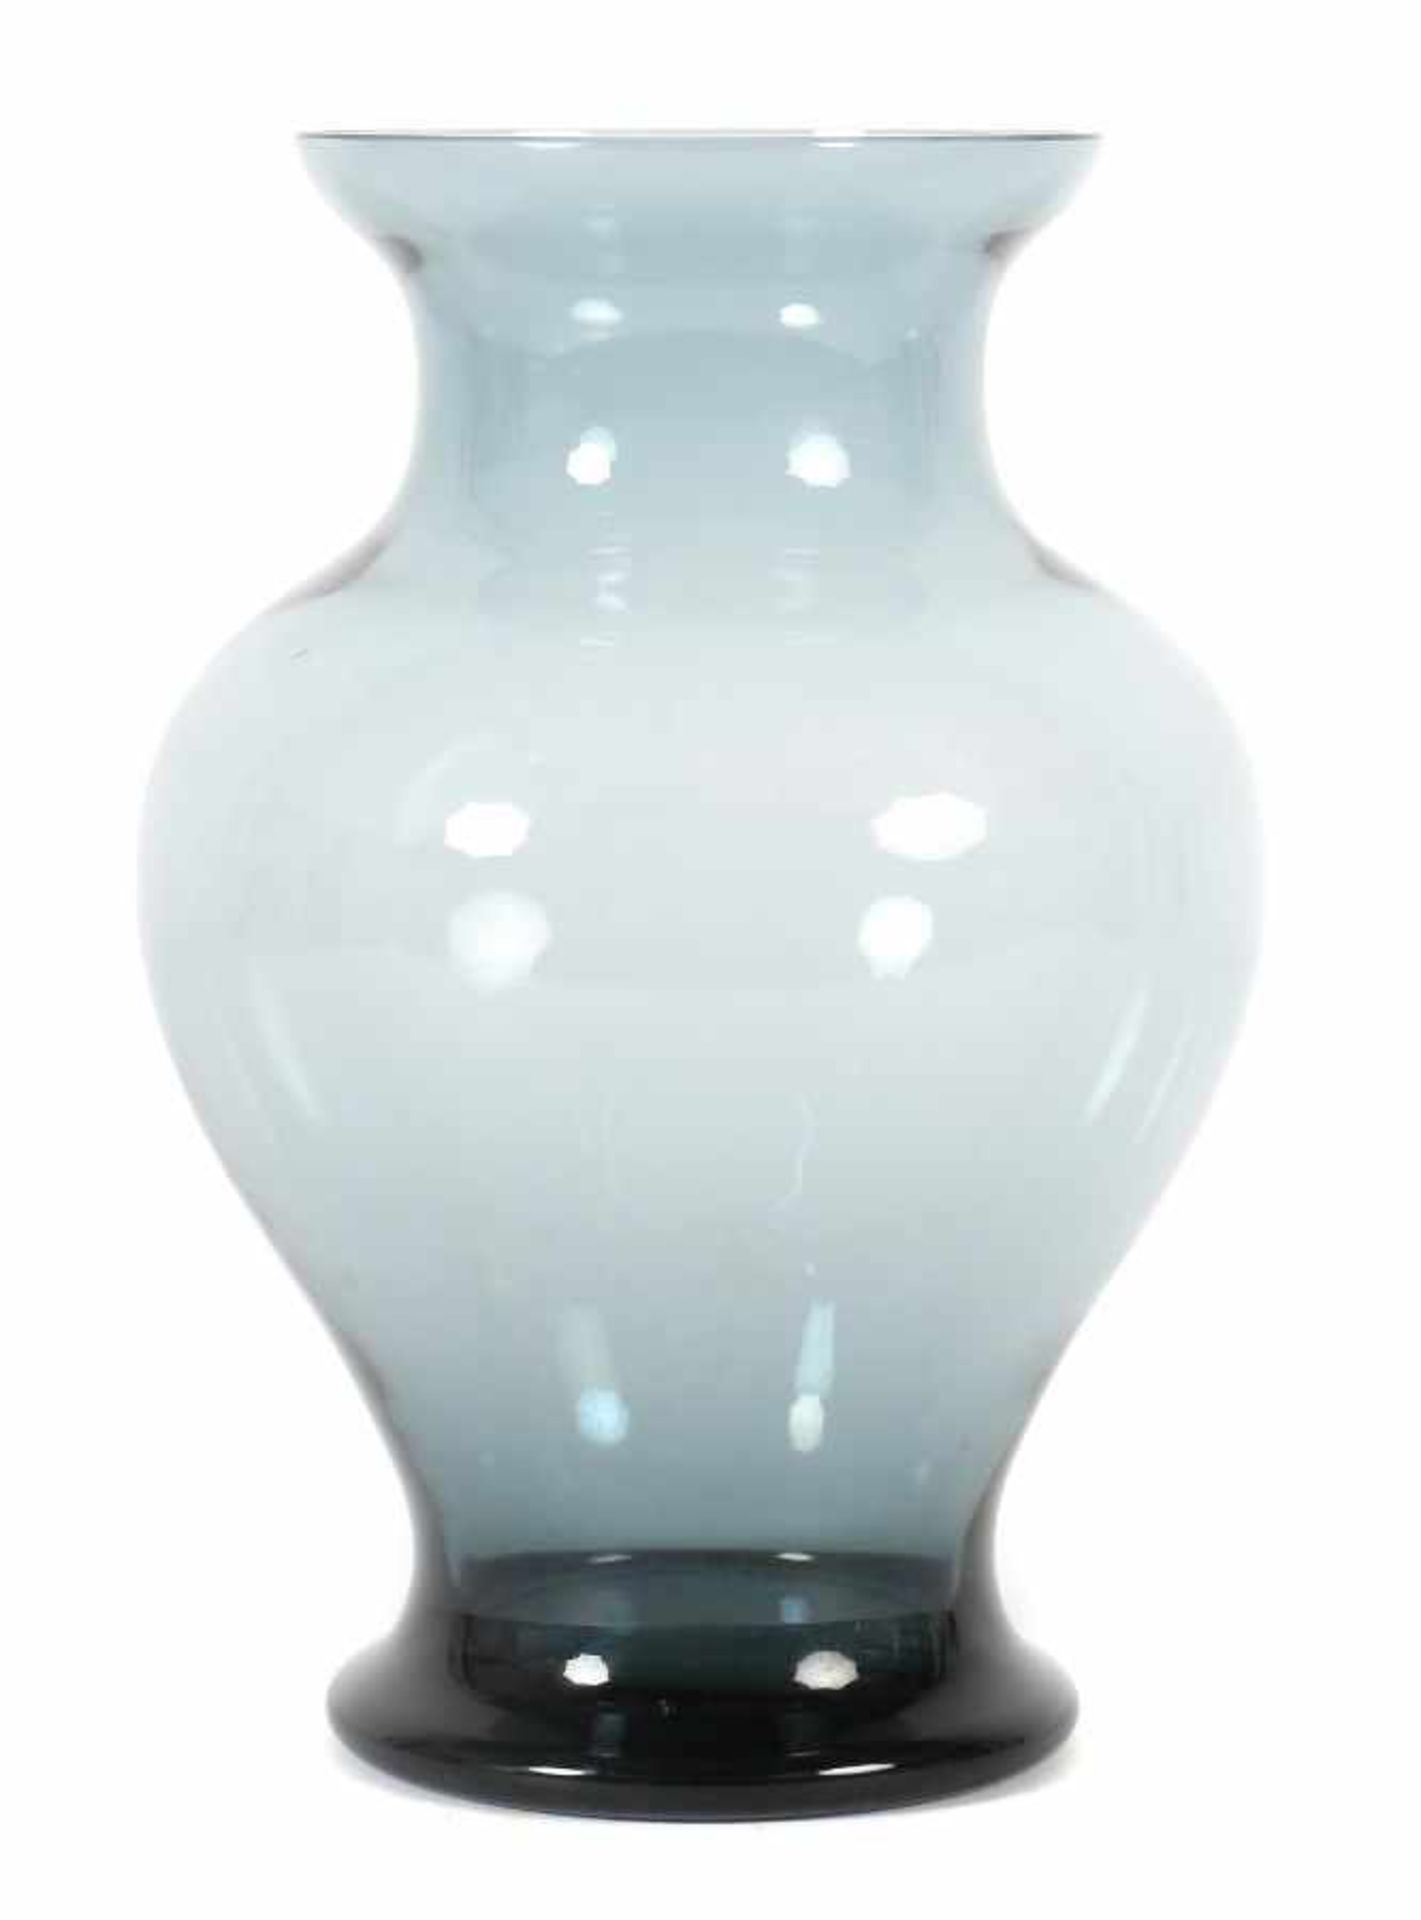 Jachmann, ErichEntwerfer für WMF. Vase, WMF, Geislingen, 1970er Jahre, turmalinfarbenes Glas,